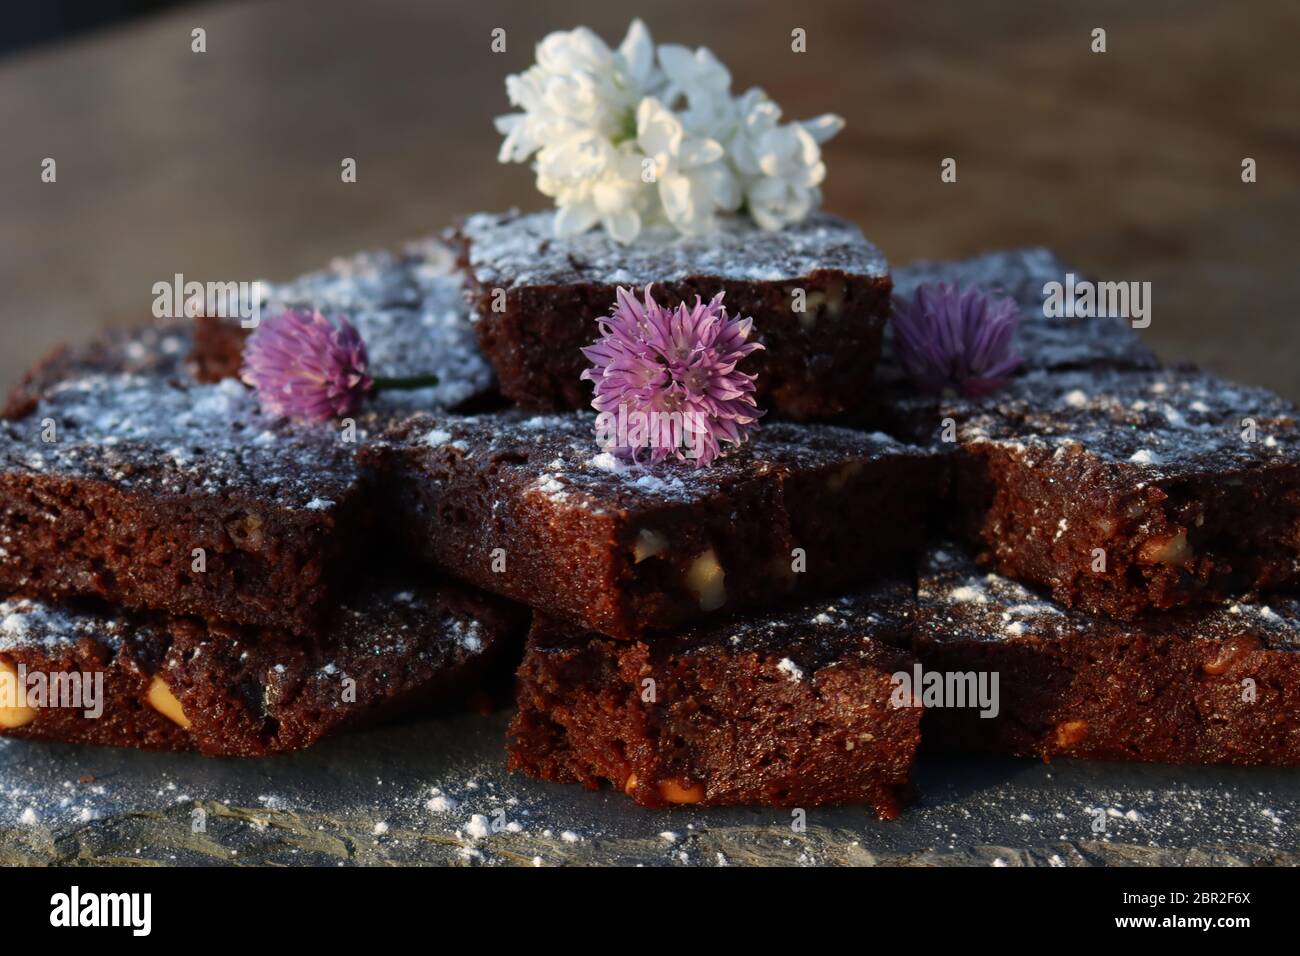 Ein Haufen von hausgemachten Schokoladenbrownies, die mit einer weißen Fliederblume und lila Schnittblumen geschmückt sind. Bedeckt mit Puderzucker Stockfoto